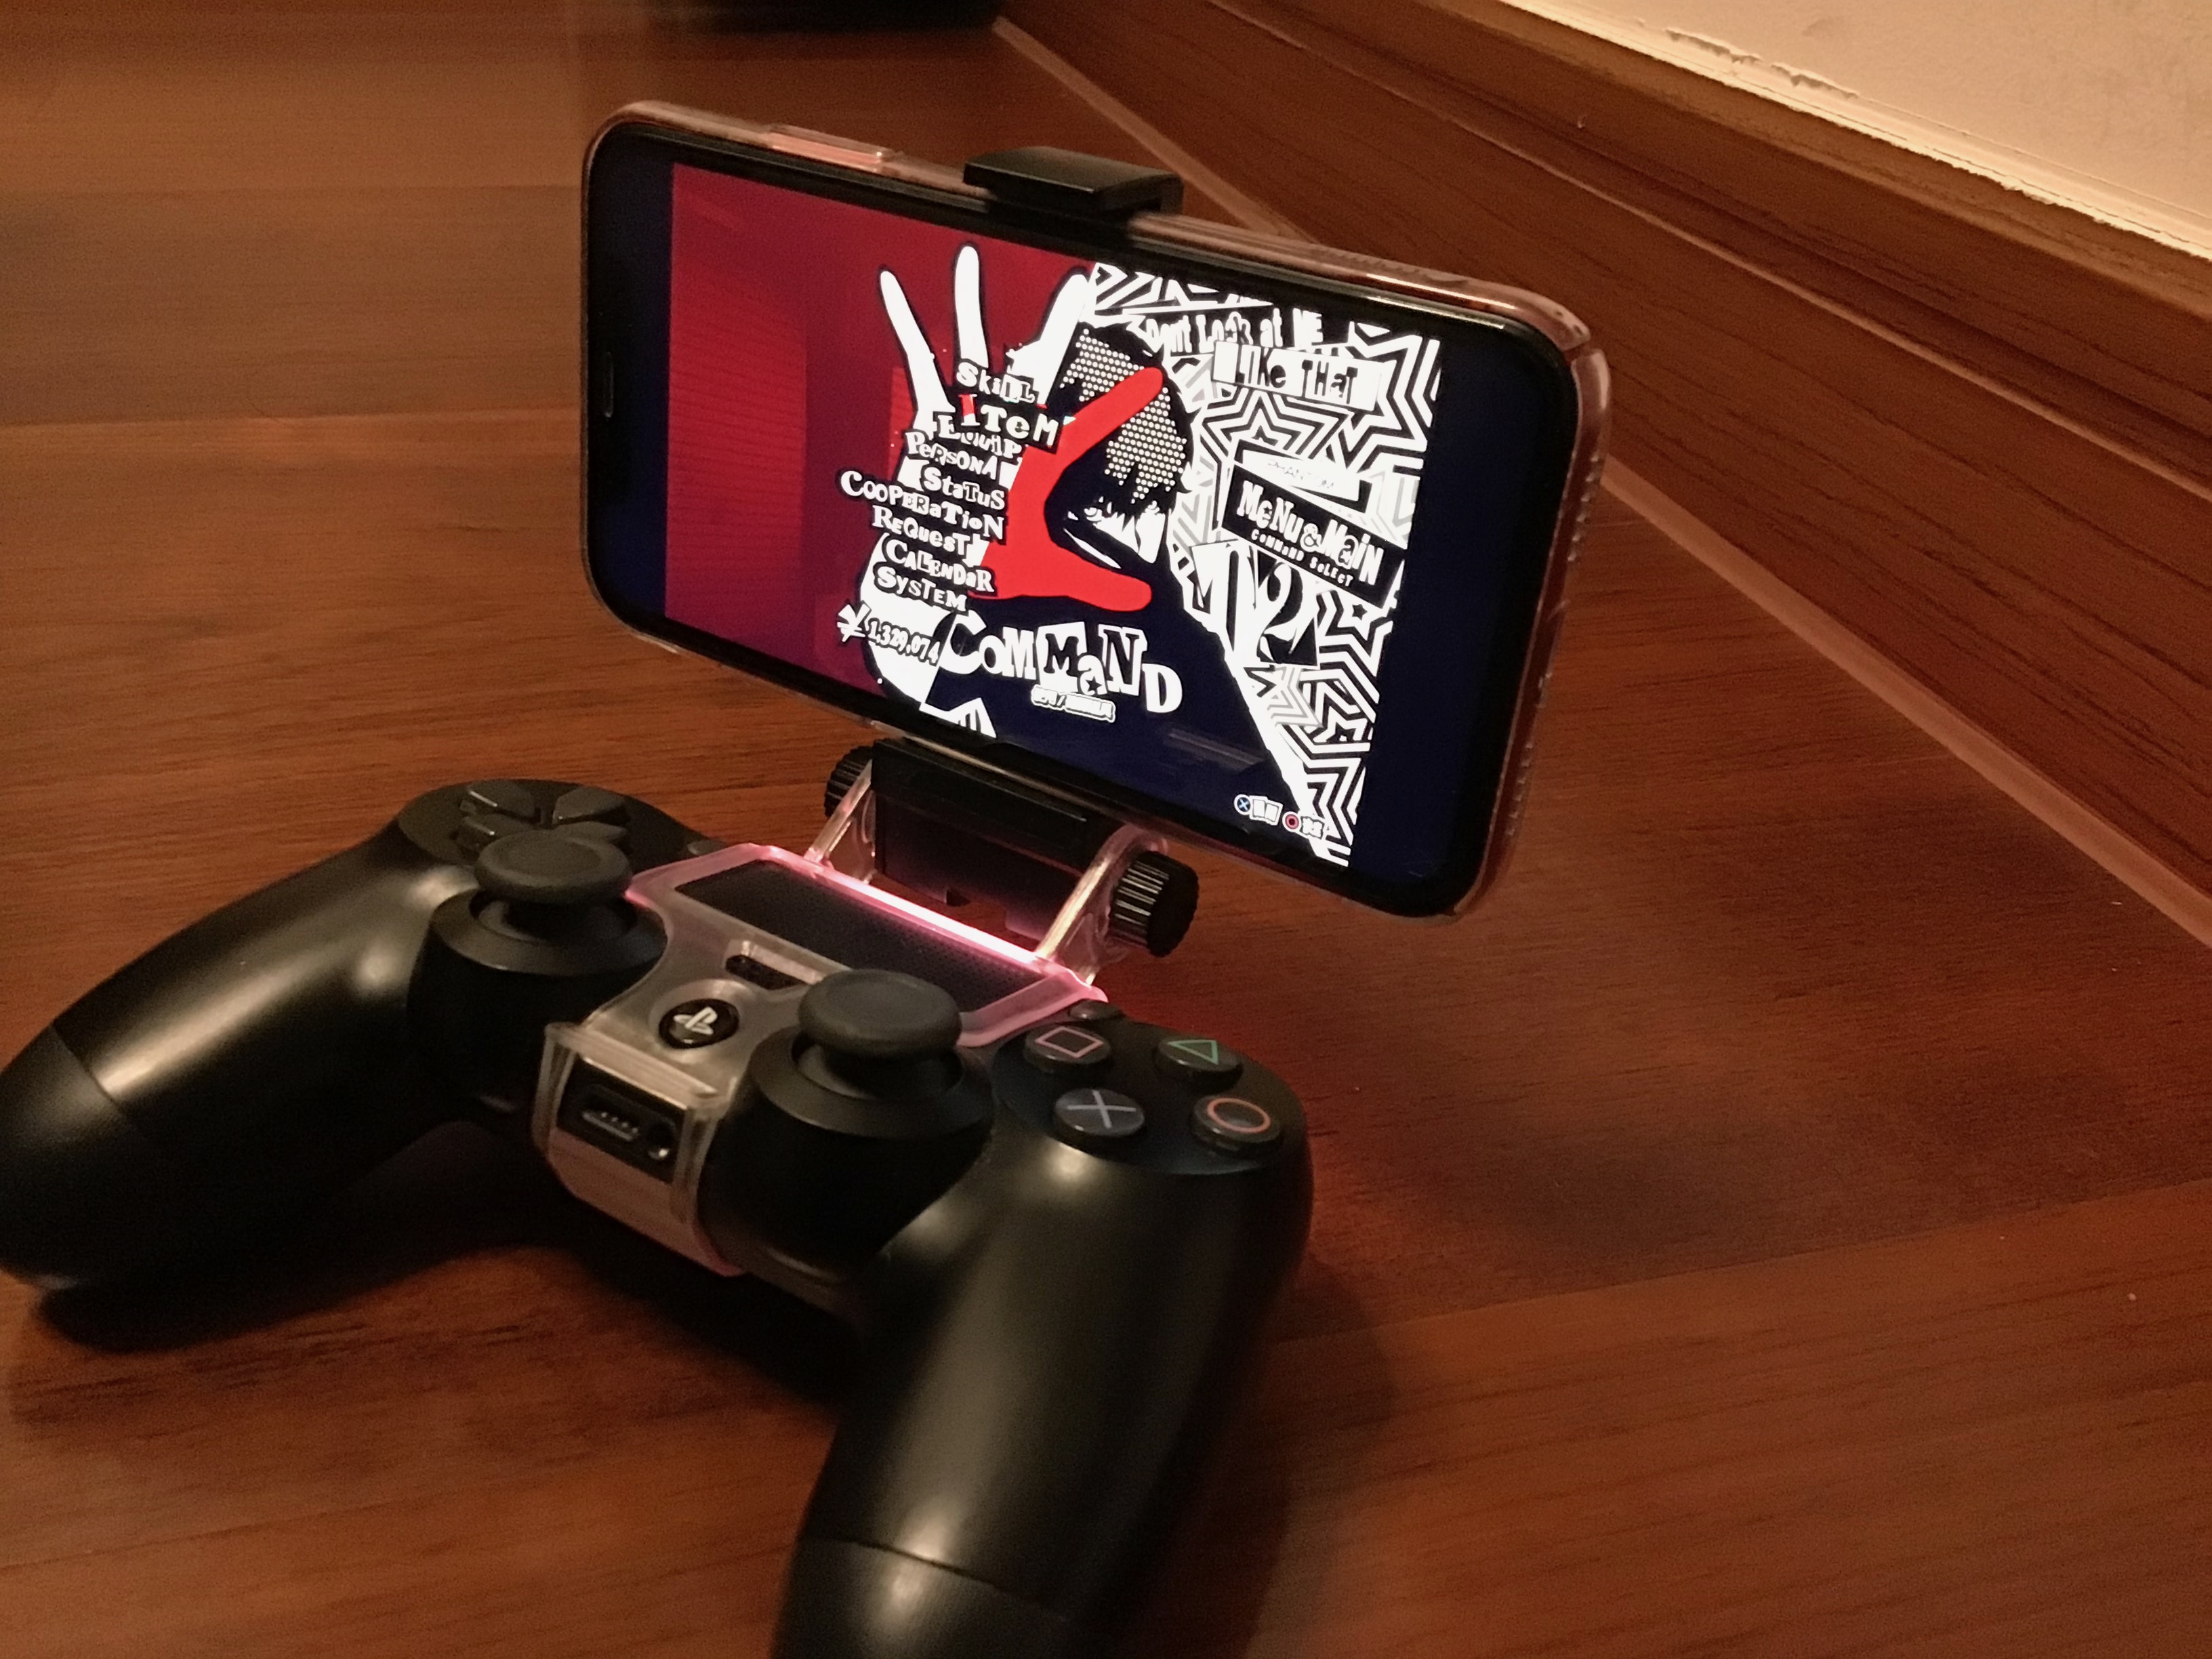 使用 DualShock 4 手柄和 iPhone XR 游玩《女神异闻录 5》，比用 PS Vita 还舒服。